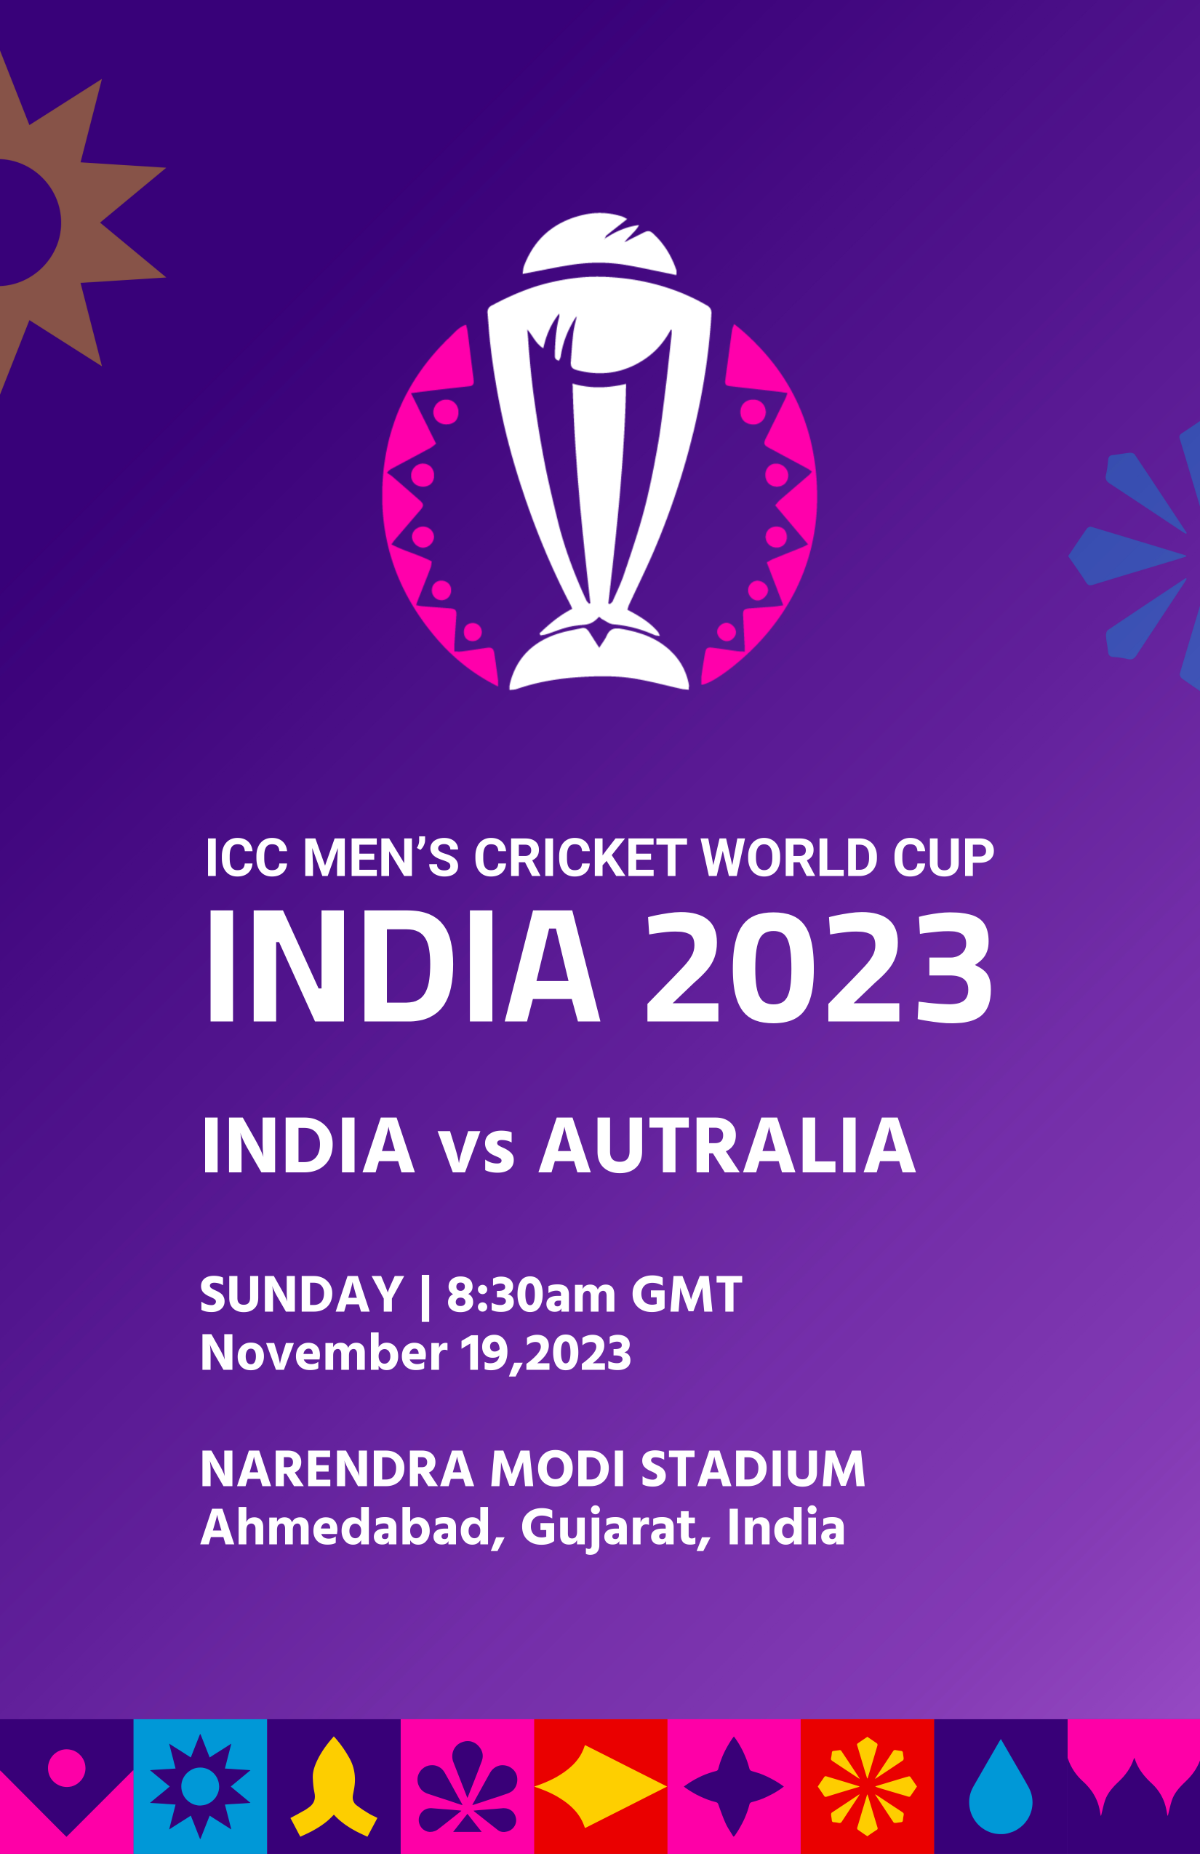 2023 ICC Men's Cricket World Cup Schedule Poster